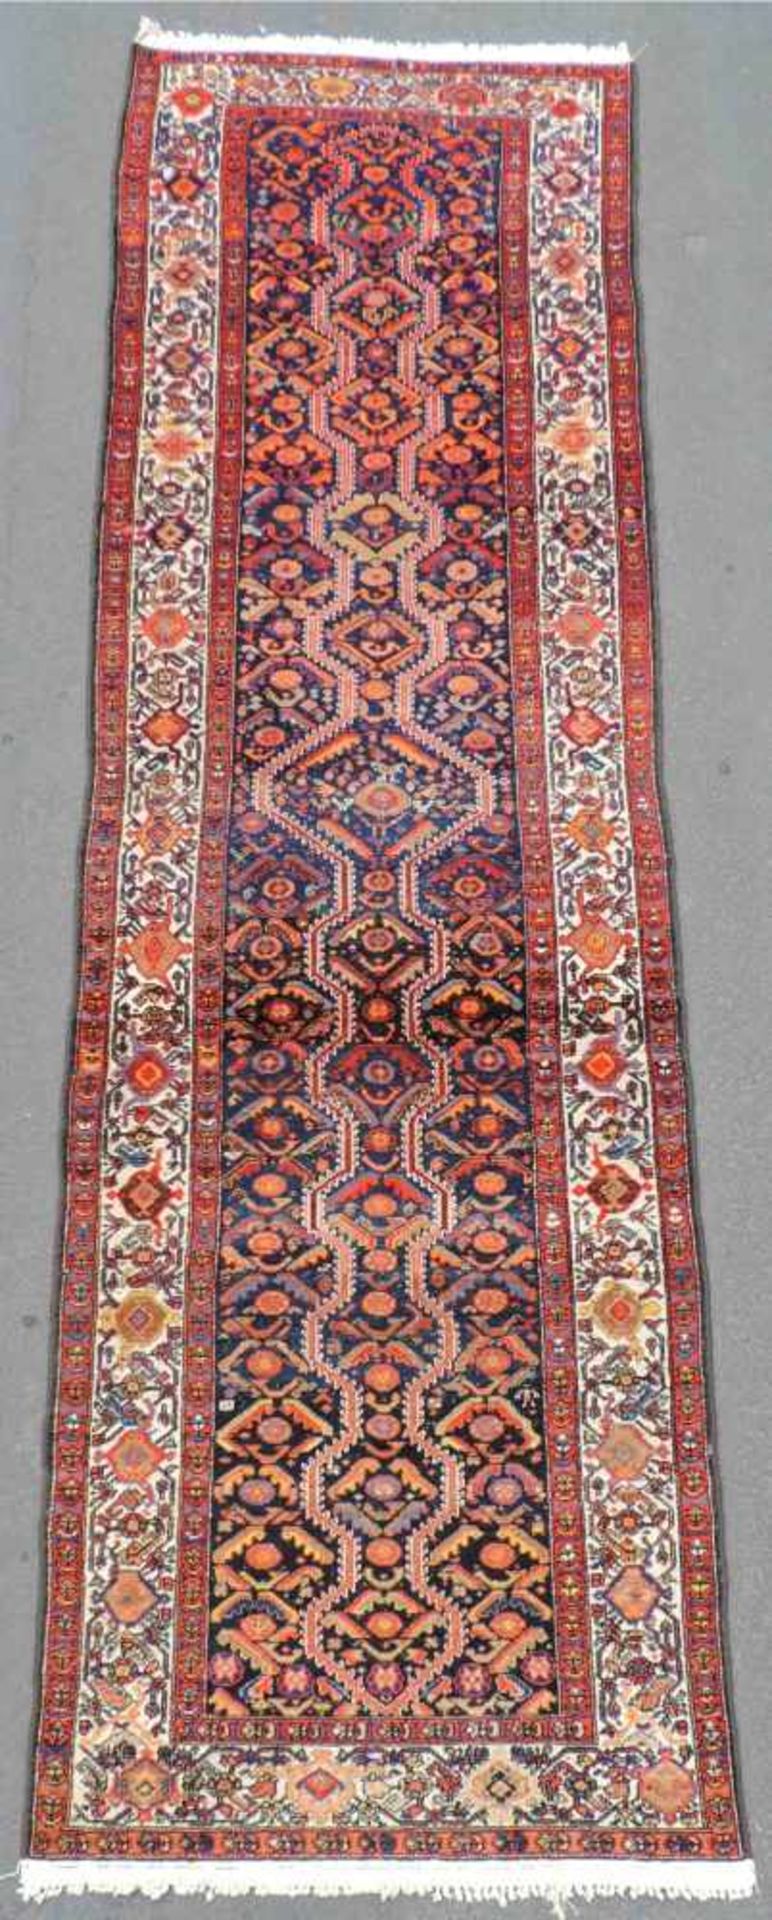 Malayer Perserteppich. Galerie. Iran. Alt, um 1930. 372 cm x 100 cm. Handgeknüpft. Wolle auf